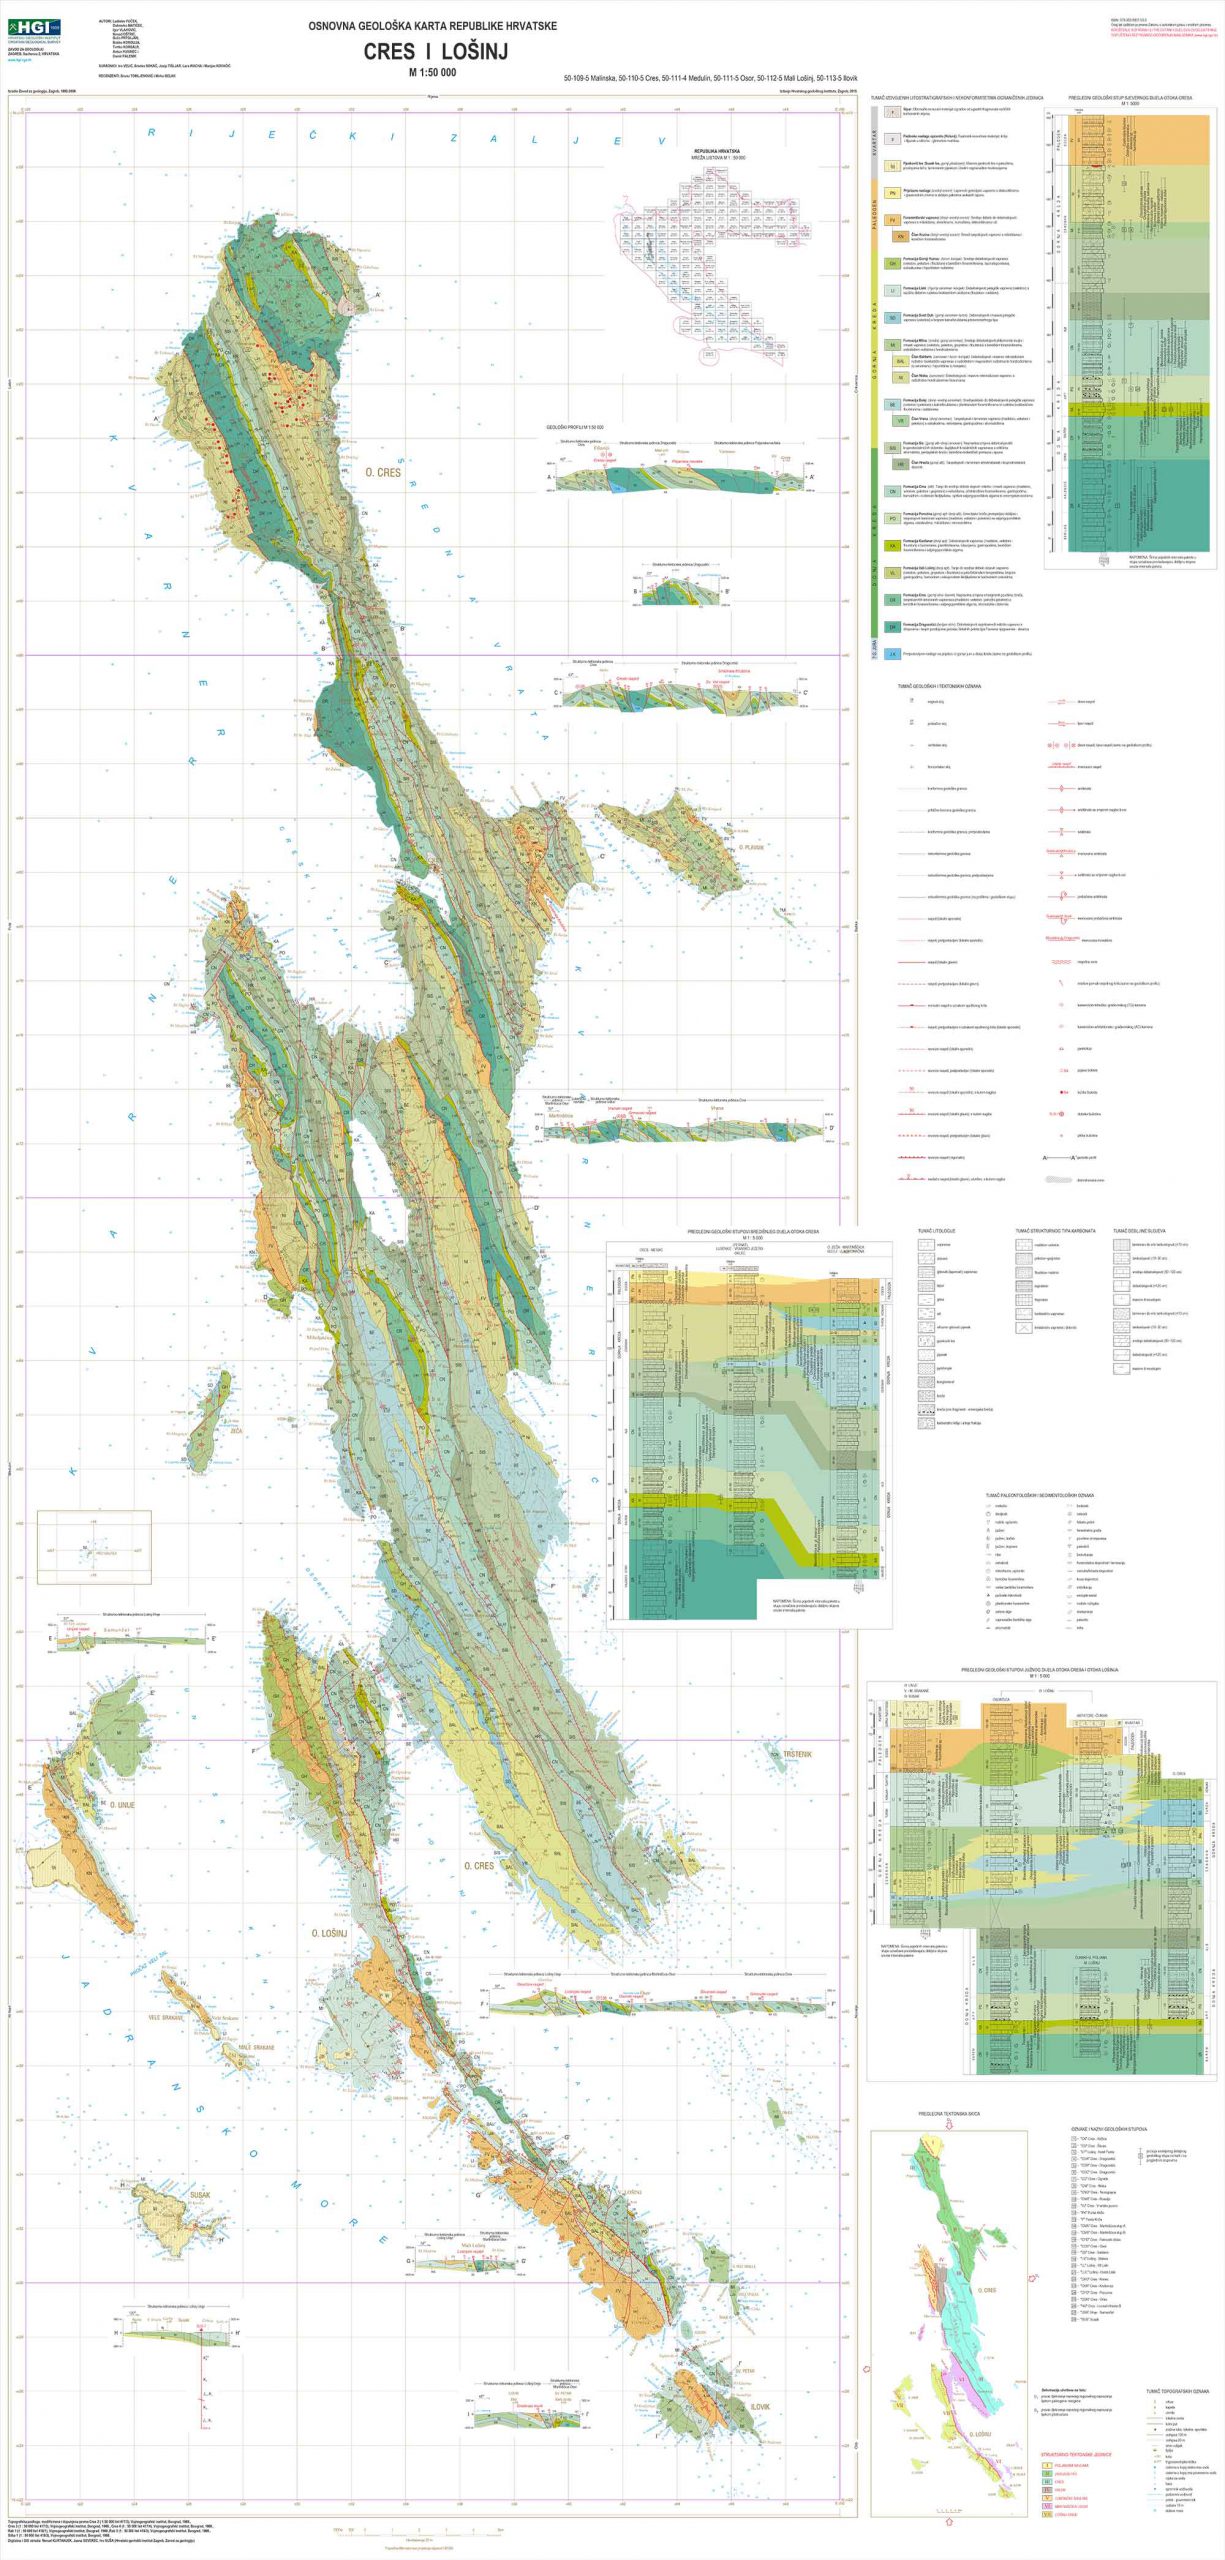 Osnovna geološka karta RH 1:50.000 Cres i Lošinj